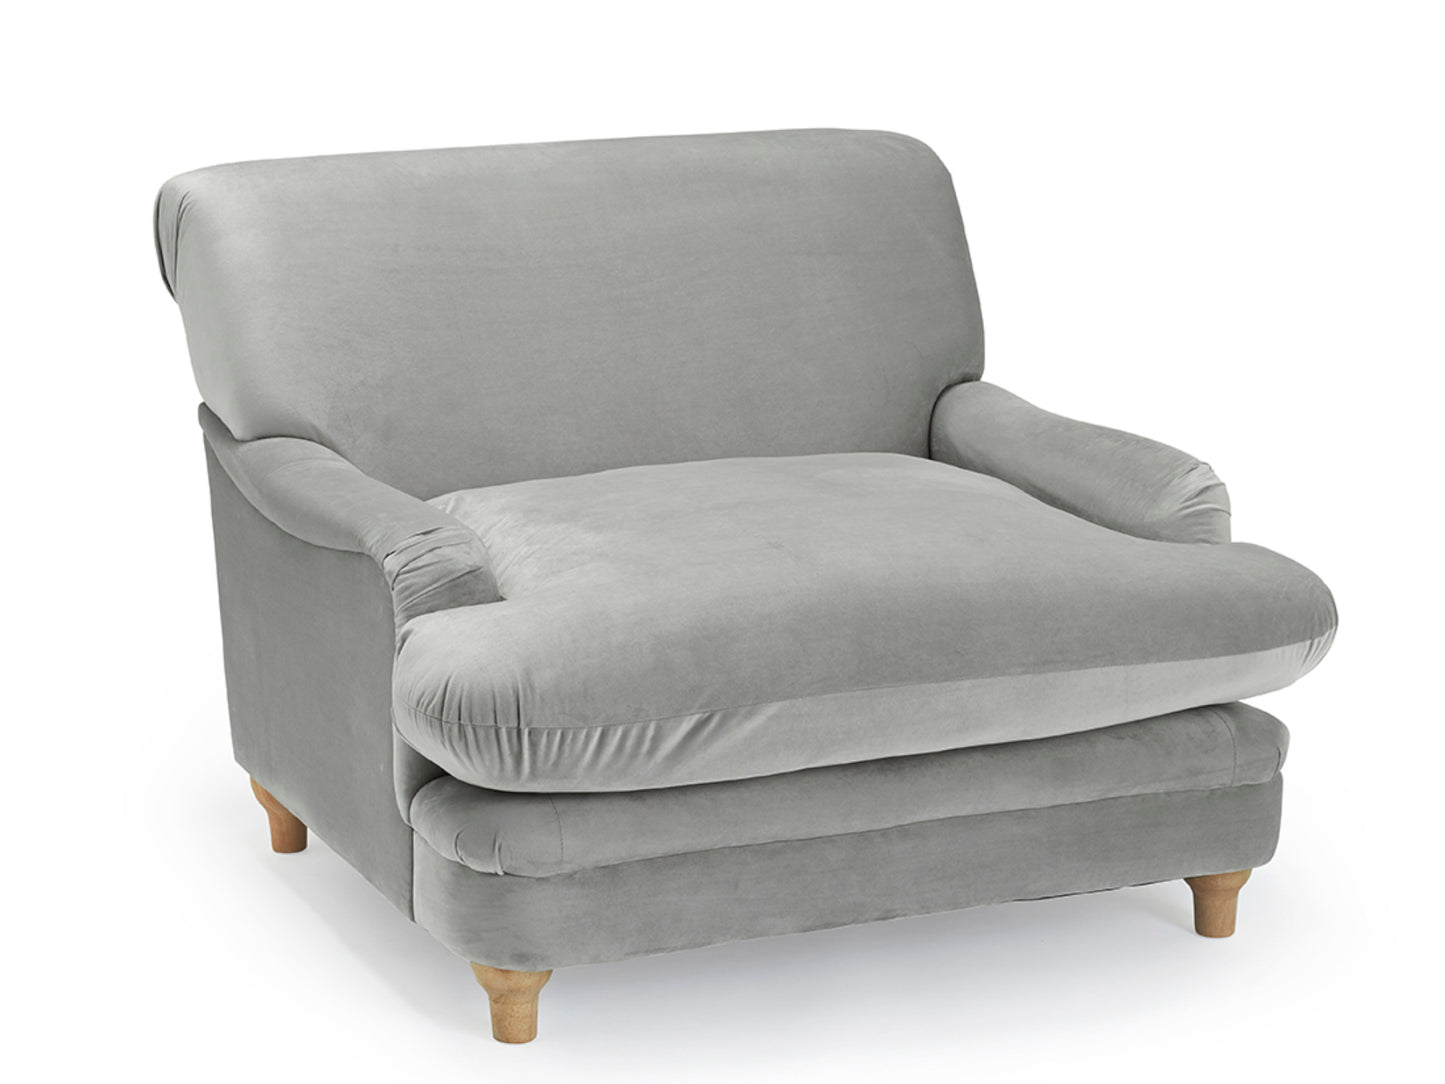 Plumpton Chair in Grey